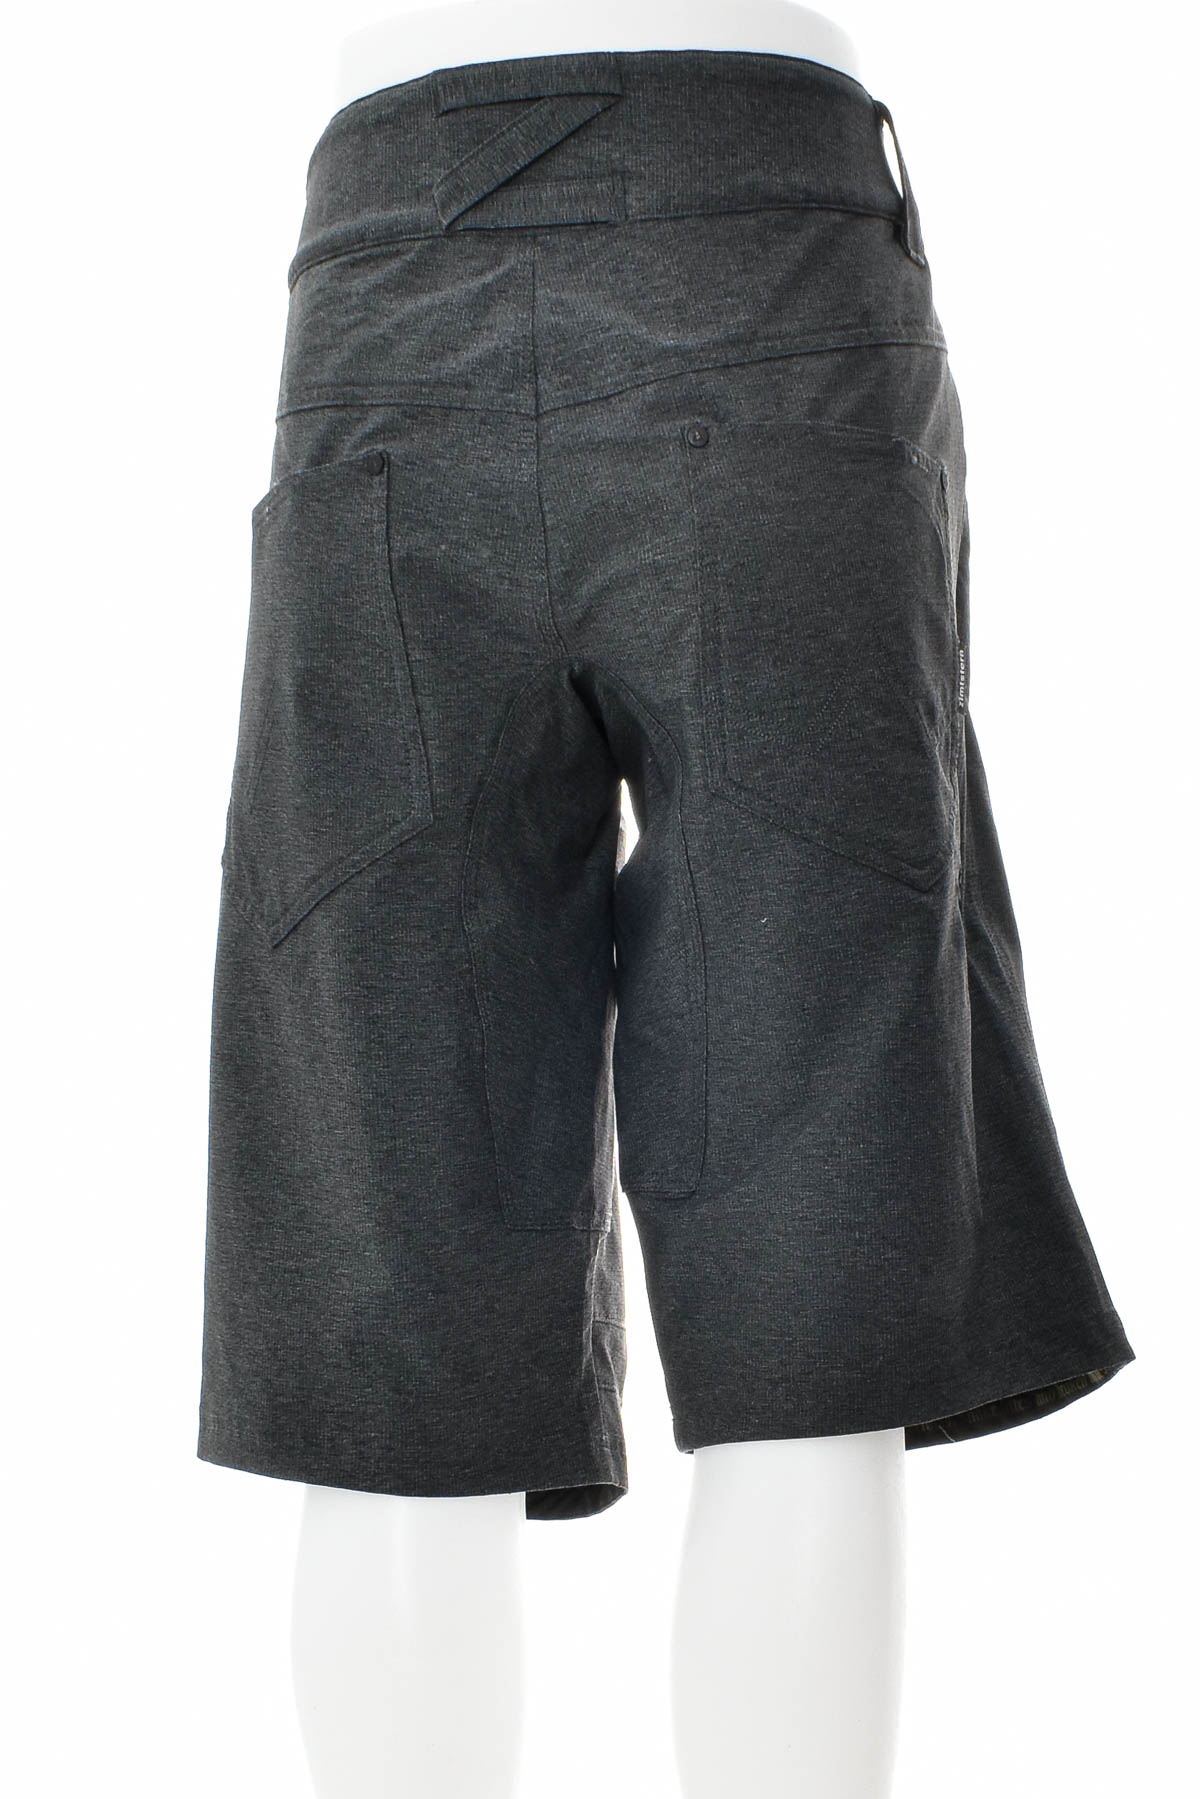 Pantaloni scurți bărbați - Zimtstern - 1